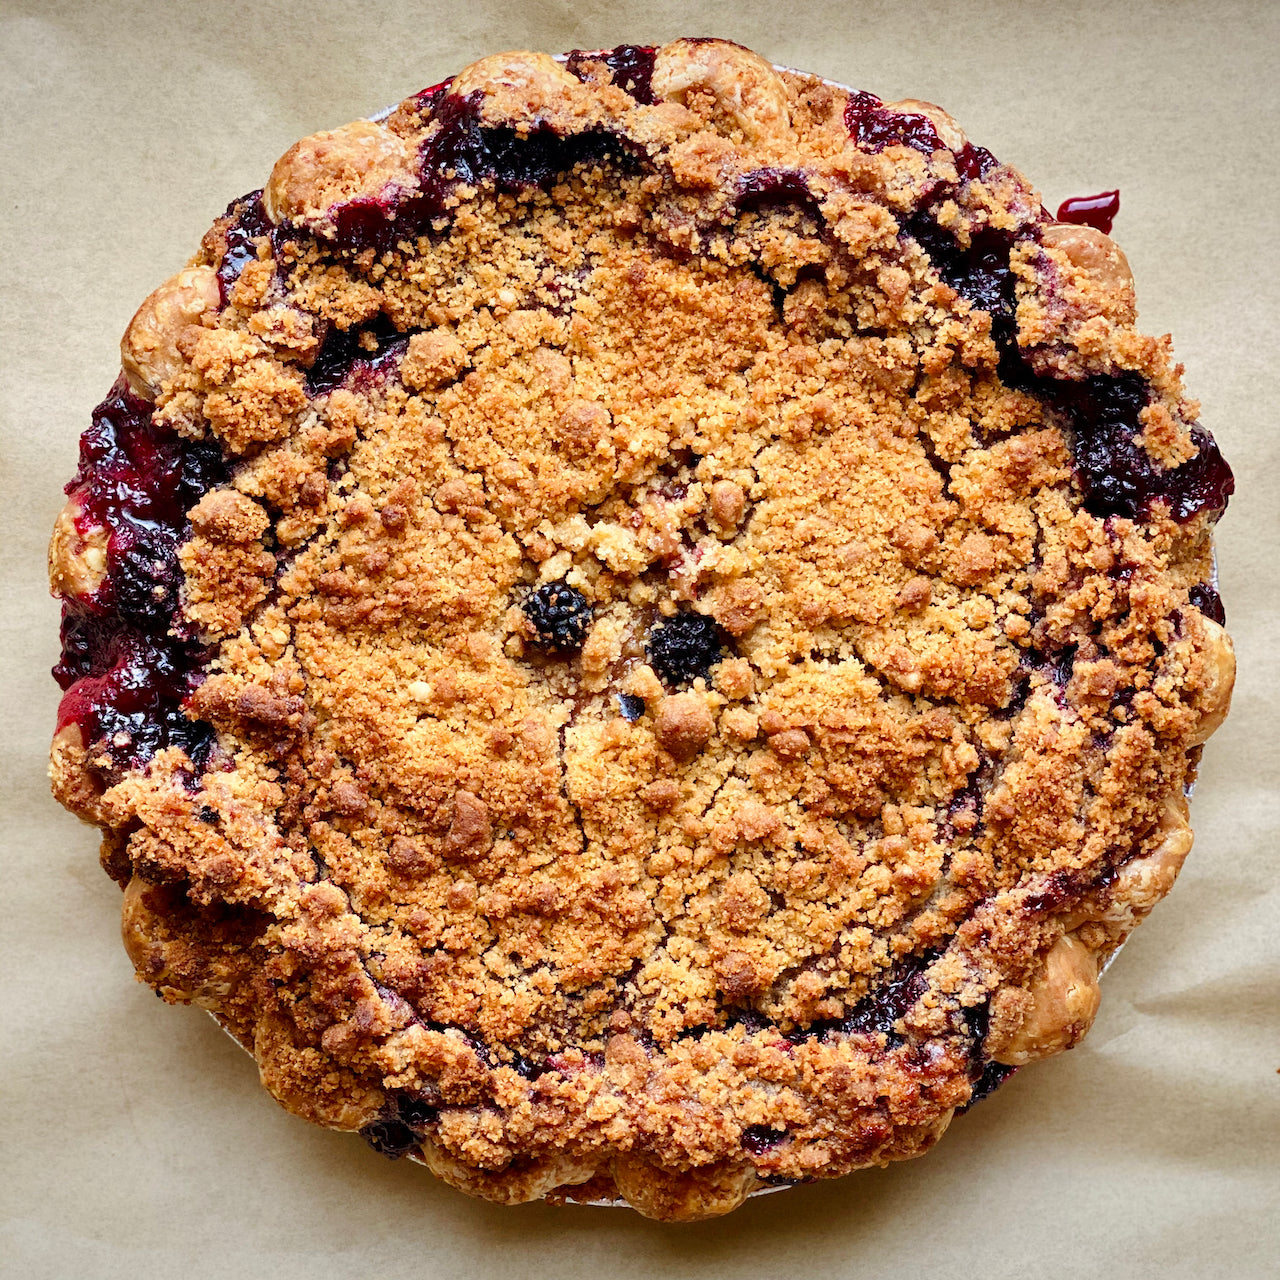 Pie - Blueberry - Crumb Top - 10"